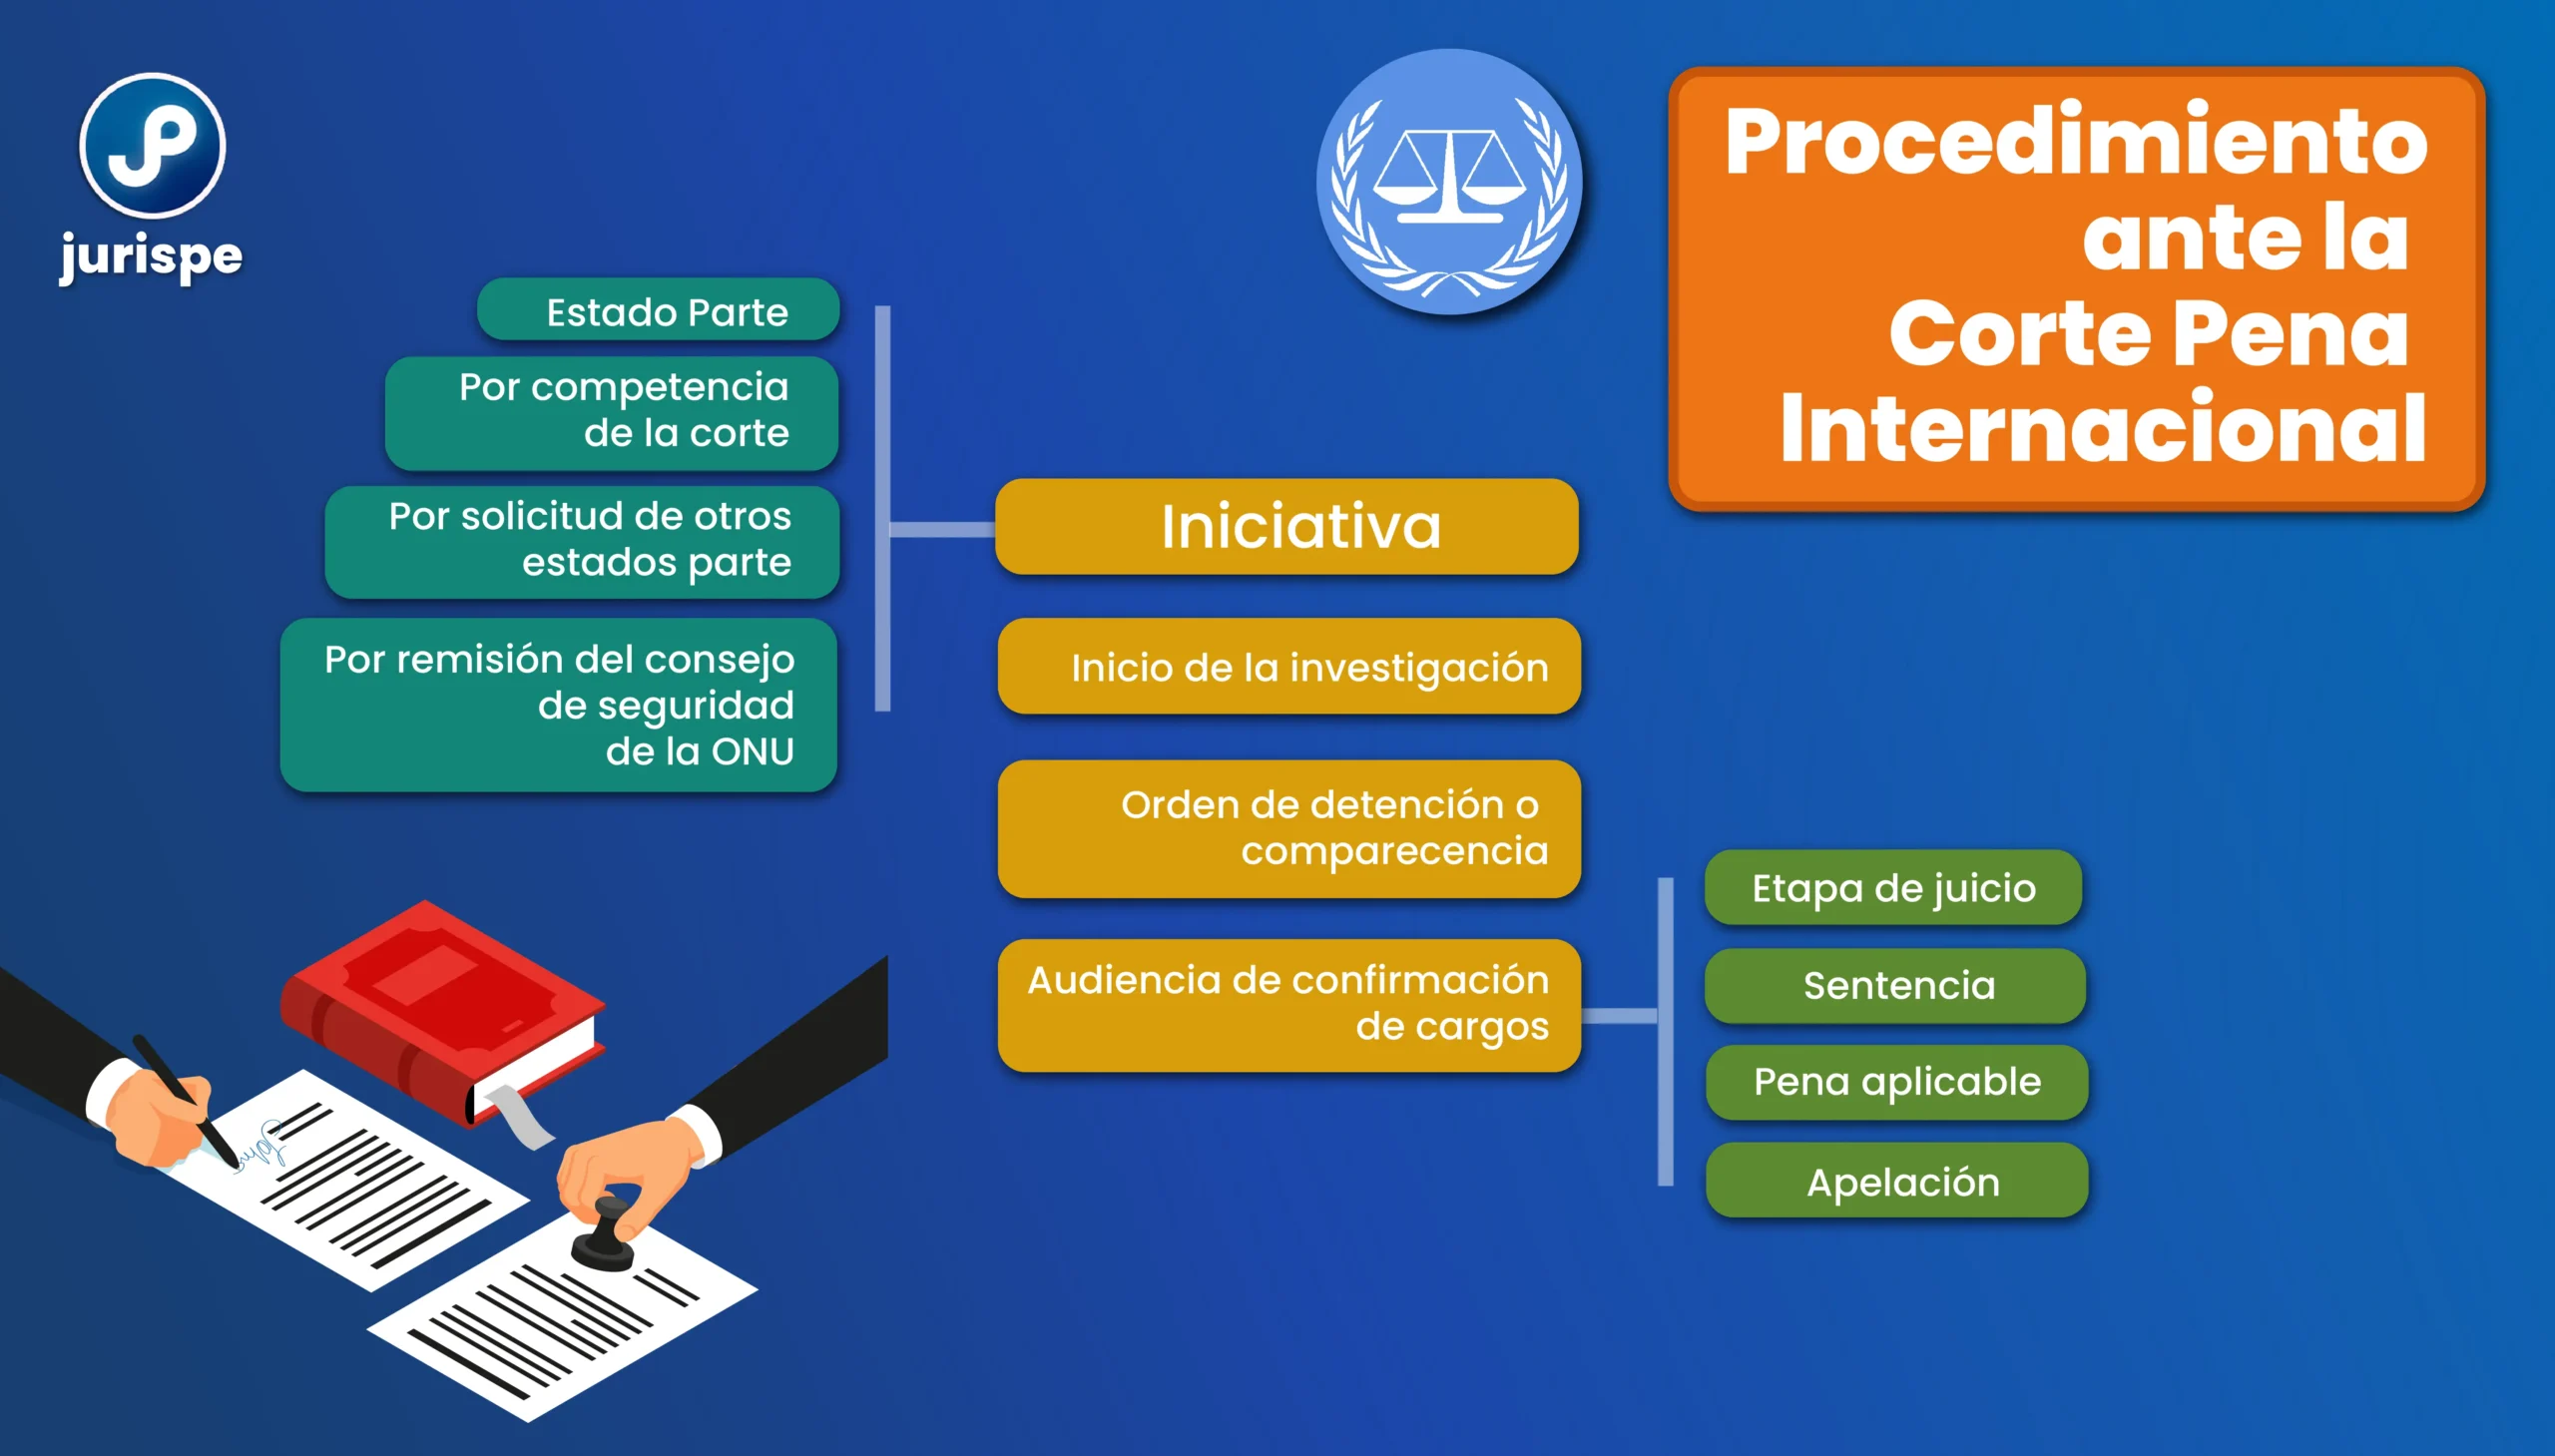 corte penal internacional resumen - Cómo funciona la Corte Penal Internacional y cuál es su estructura